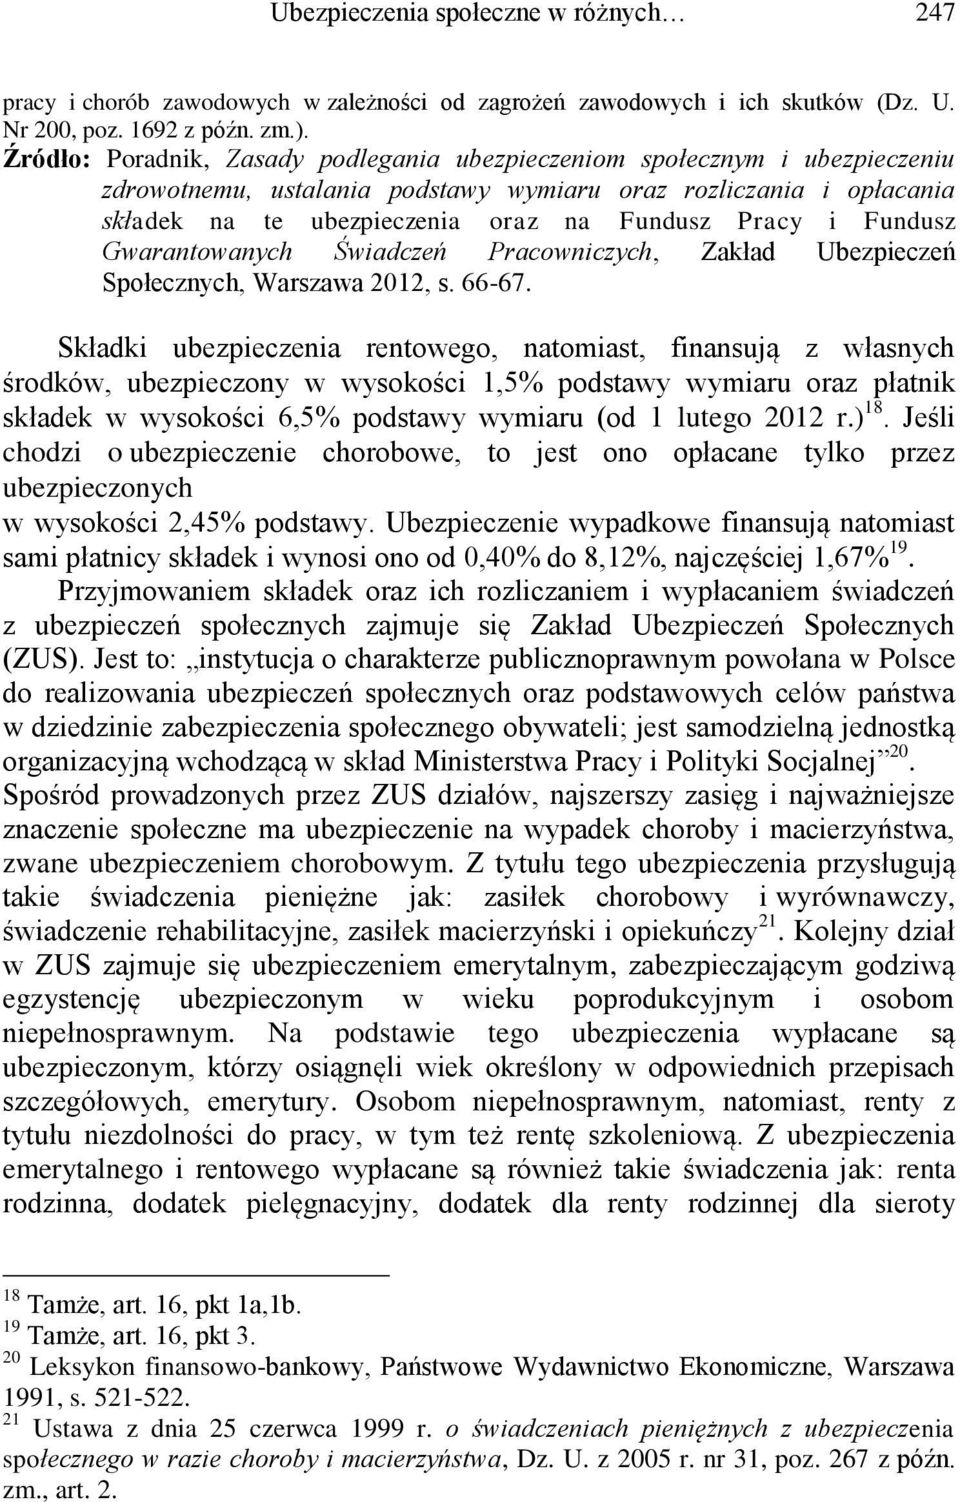 Fundusz Gwarantowanych Świadczeń Pracowniczych, Zakład Ubezpieczeń Społecznych, Warszawa 2012, s. 66-67.